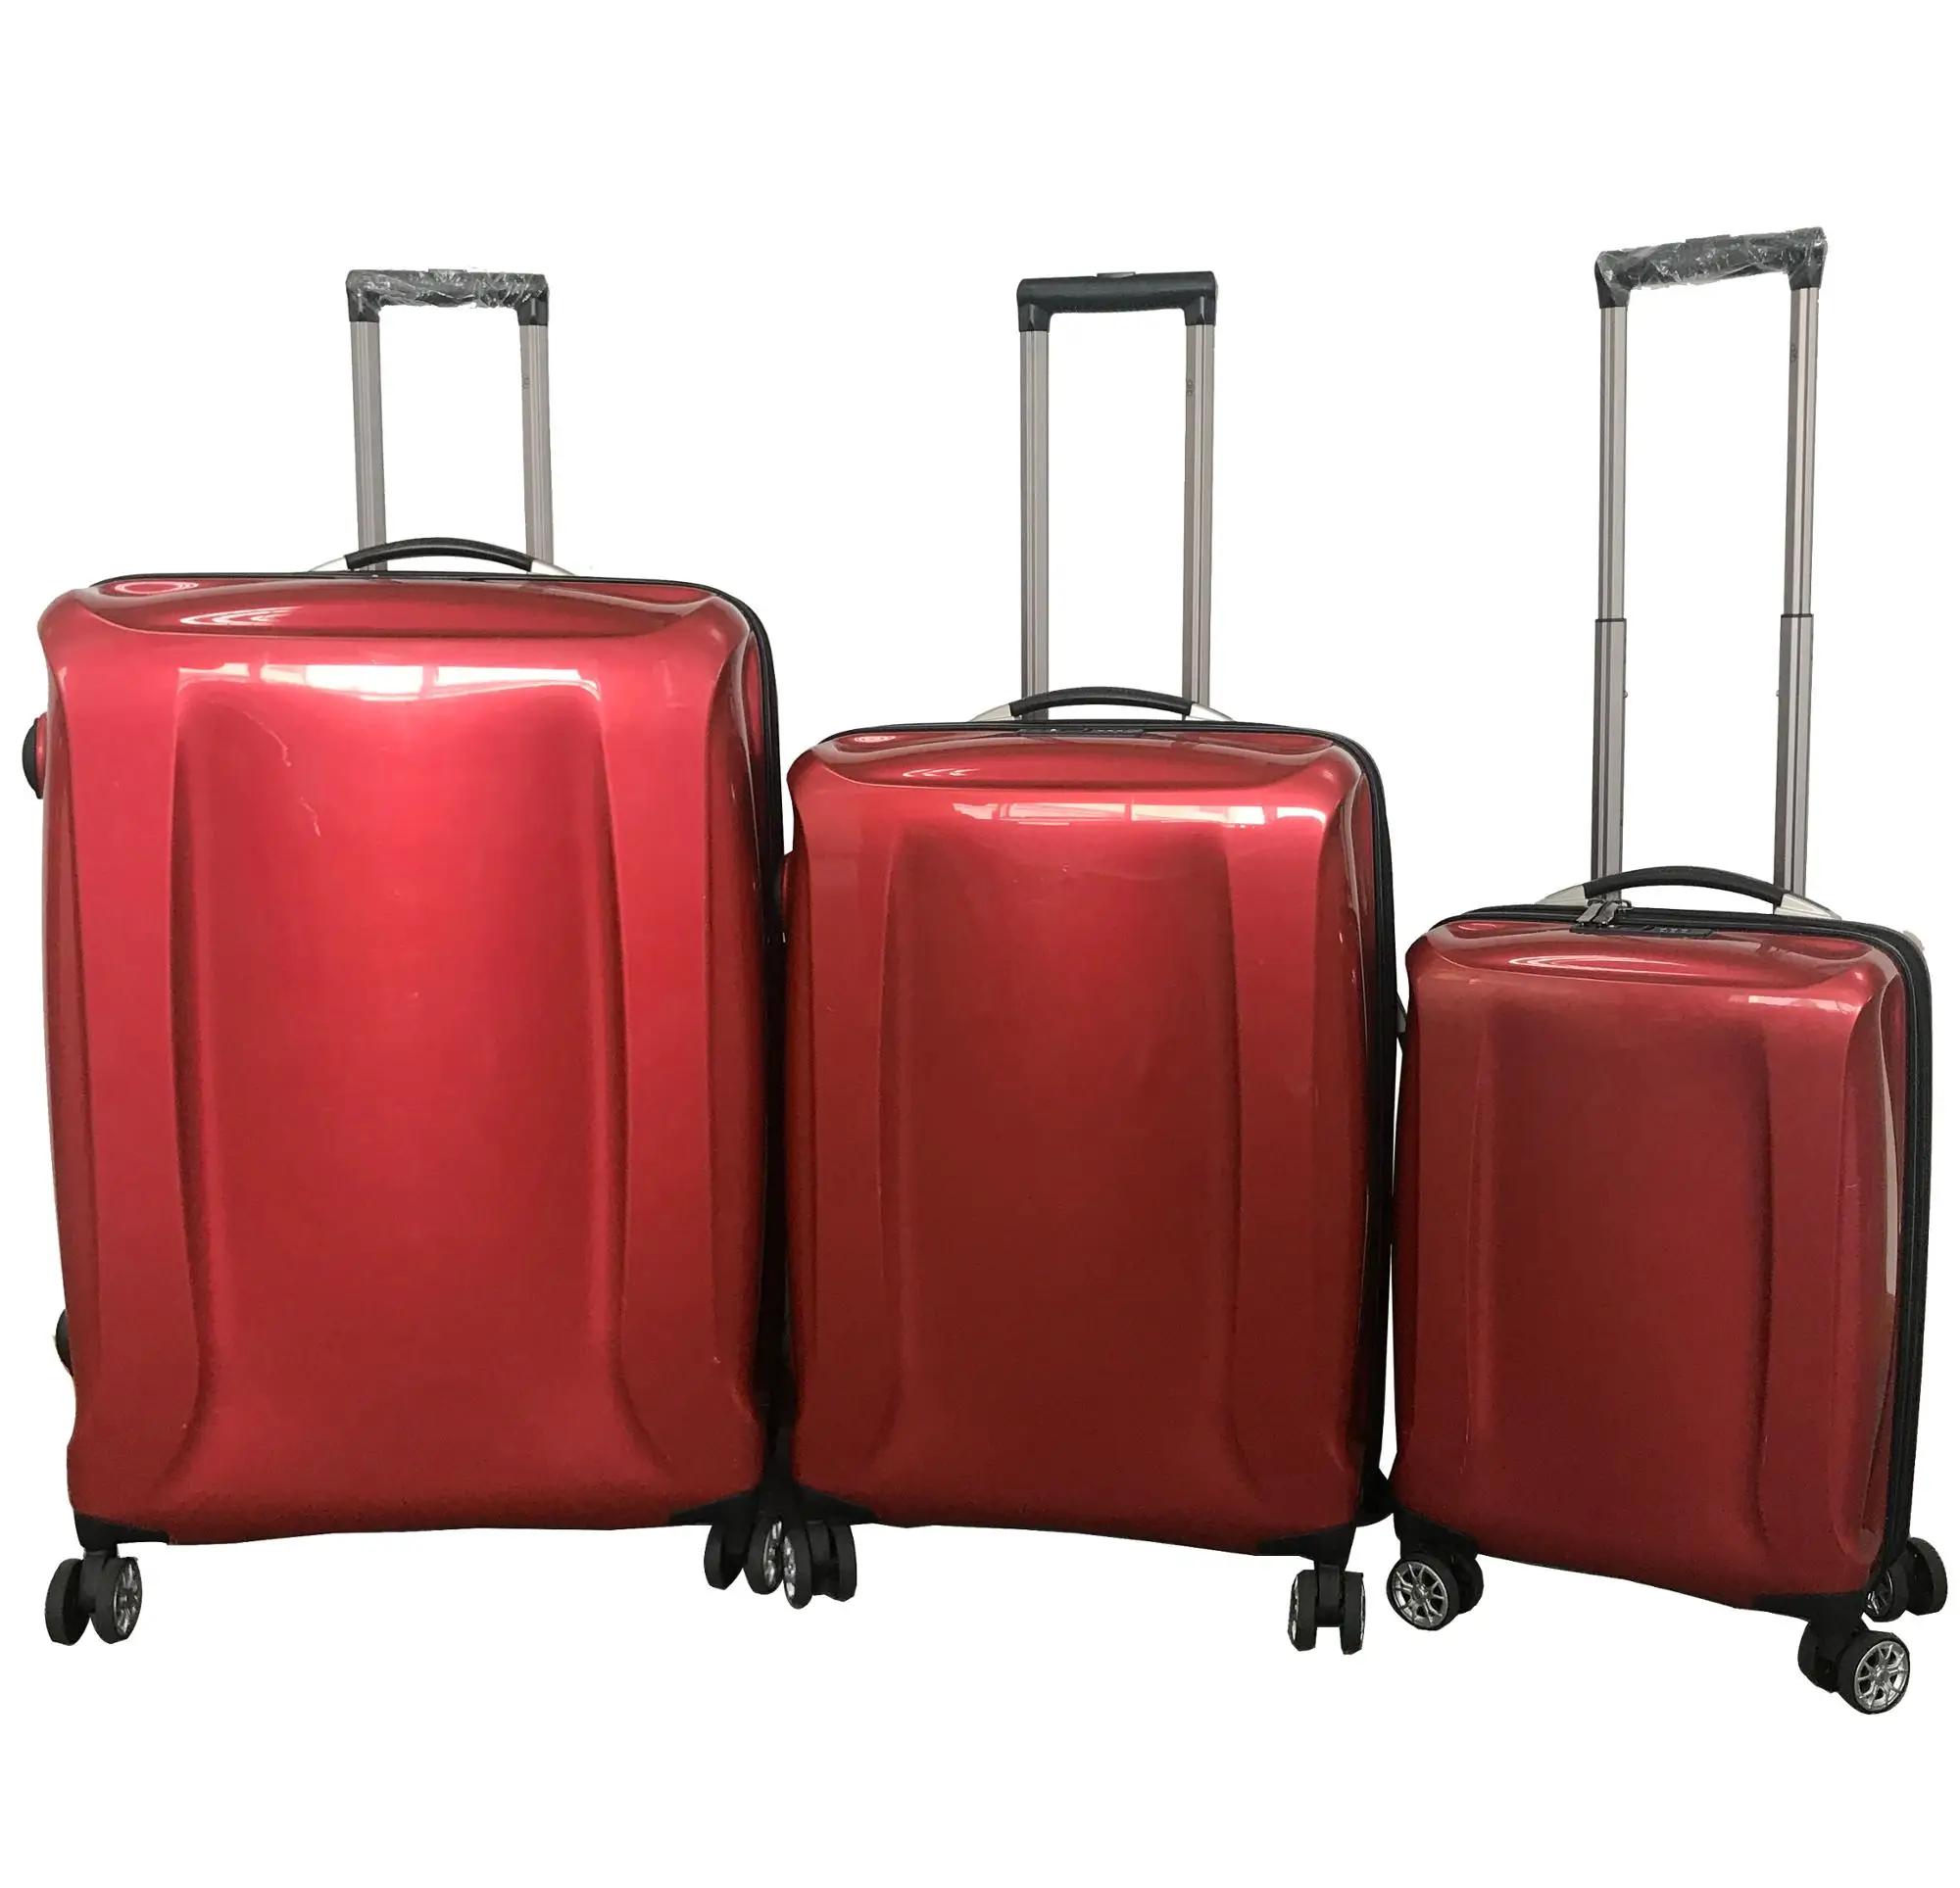 Japanese Borderline Luggage Travel World Trolley Bags Buy Travel World Trolley Bags Borderline